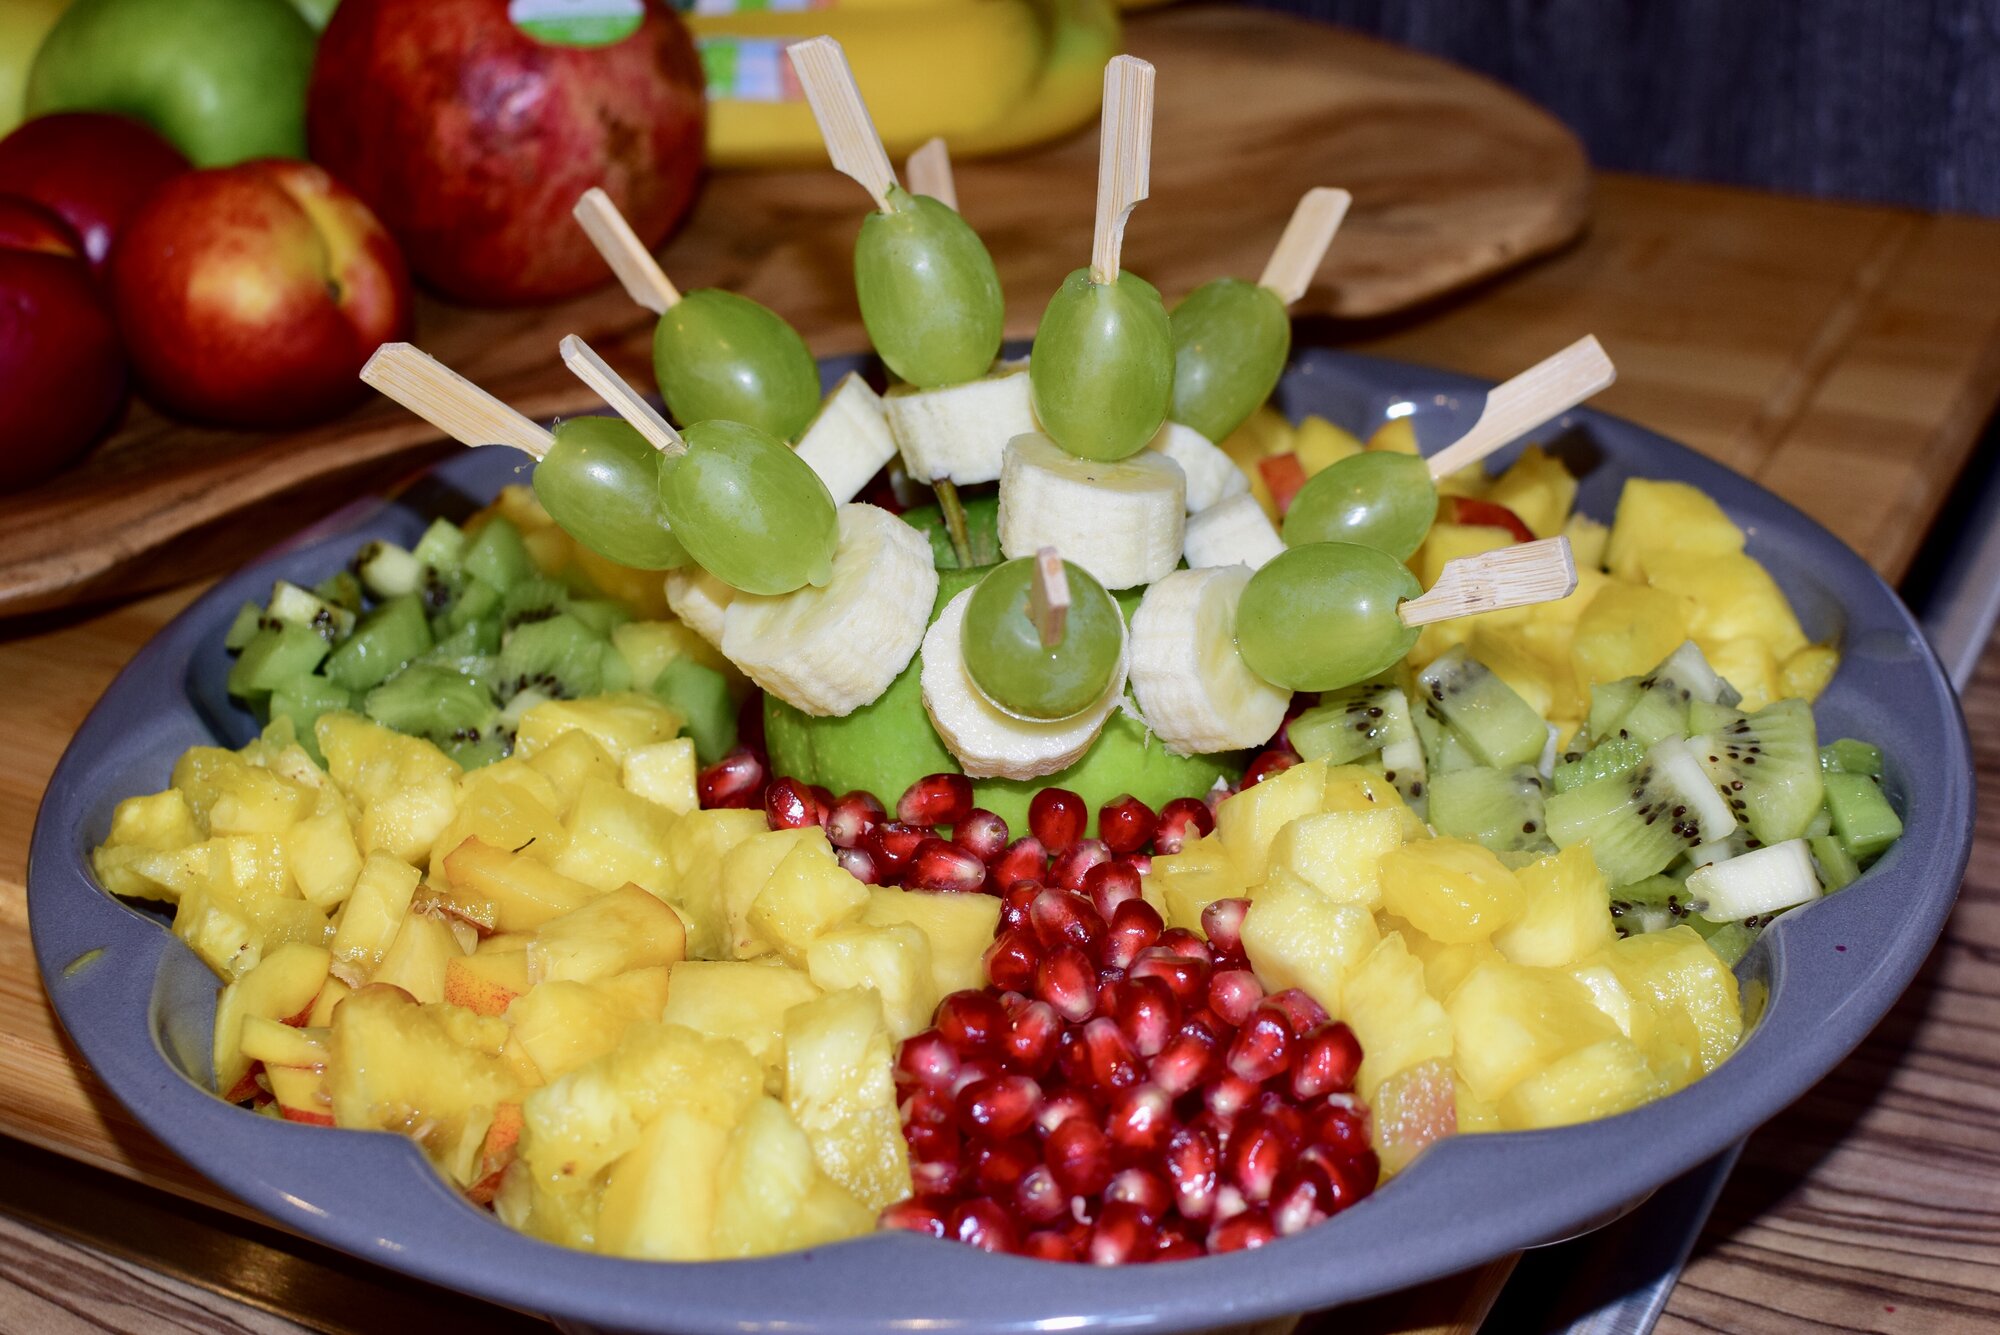 Obstplatten - zum Nachtisch viele Vitamine | Grillforum und BBQ - www ...